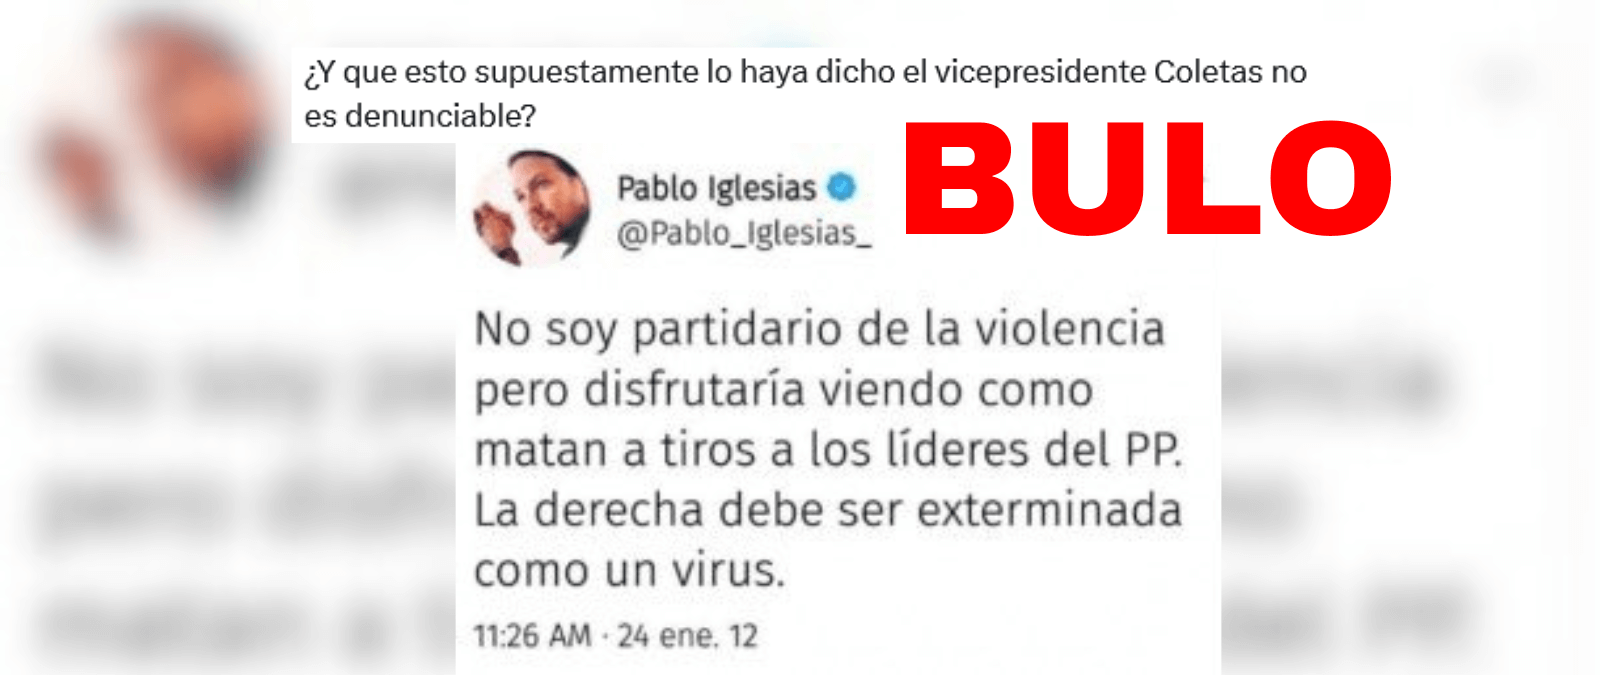 No, Pablo Iglesias no ha tuiteado que &quot;disfrutaría viendo cómo matan a tiros a los líderes del PP&quot;